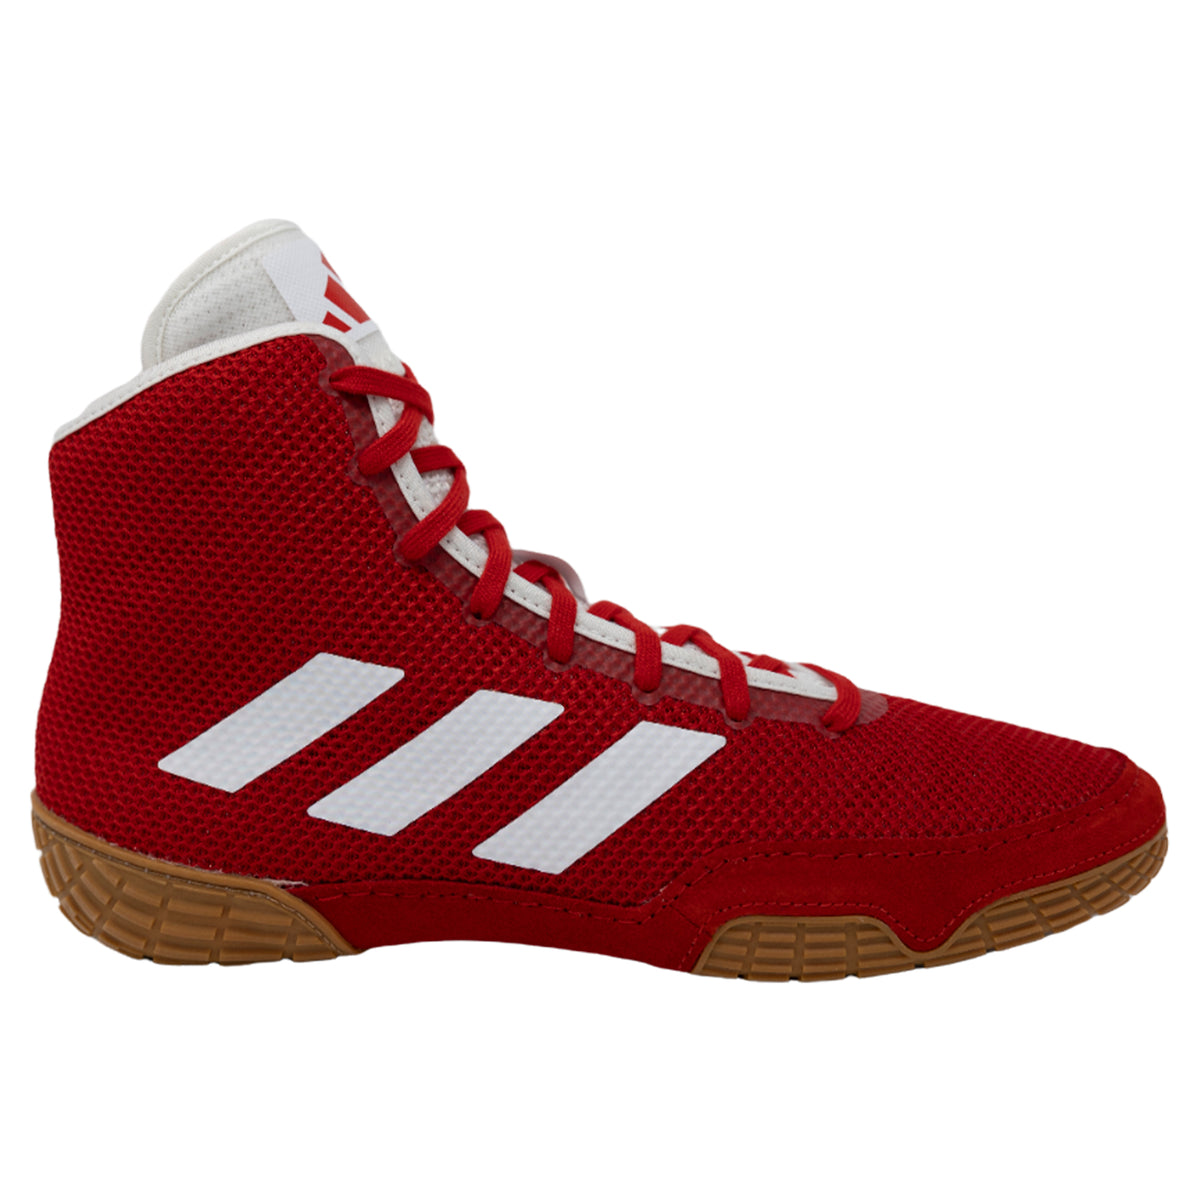 Adidas | IF9924 | Tech Herbst 2.0 | Rot/weiße Wrestling-Schuhe